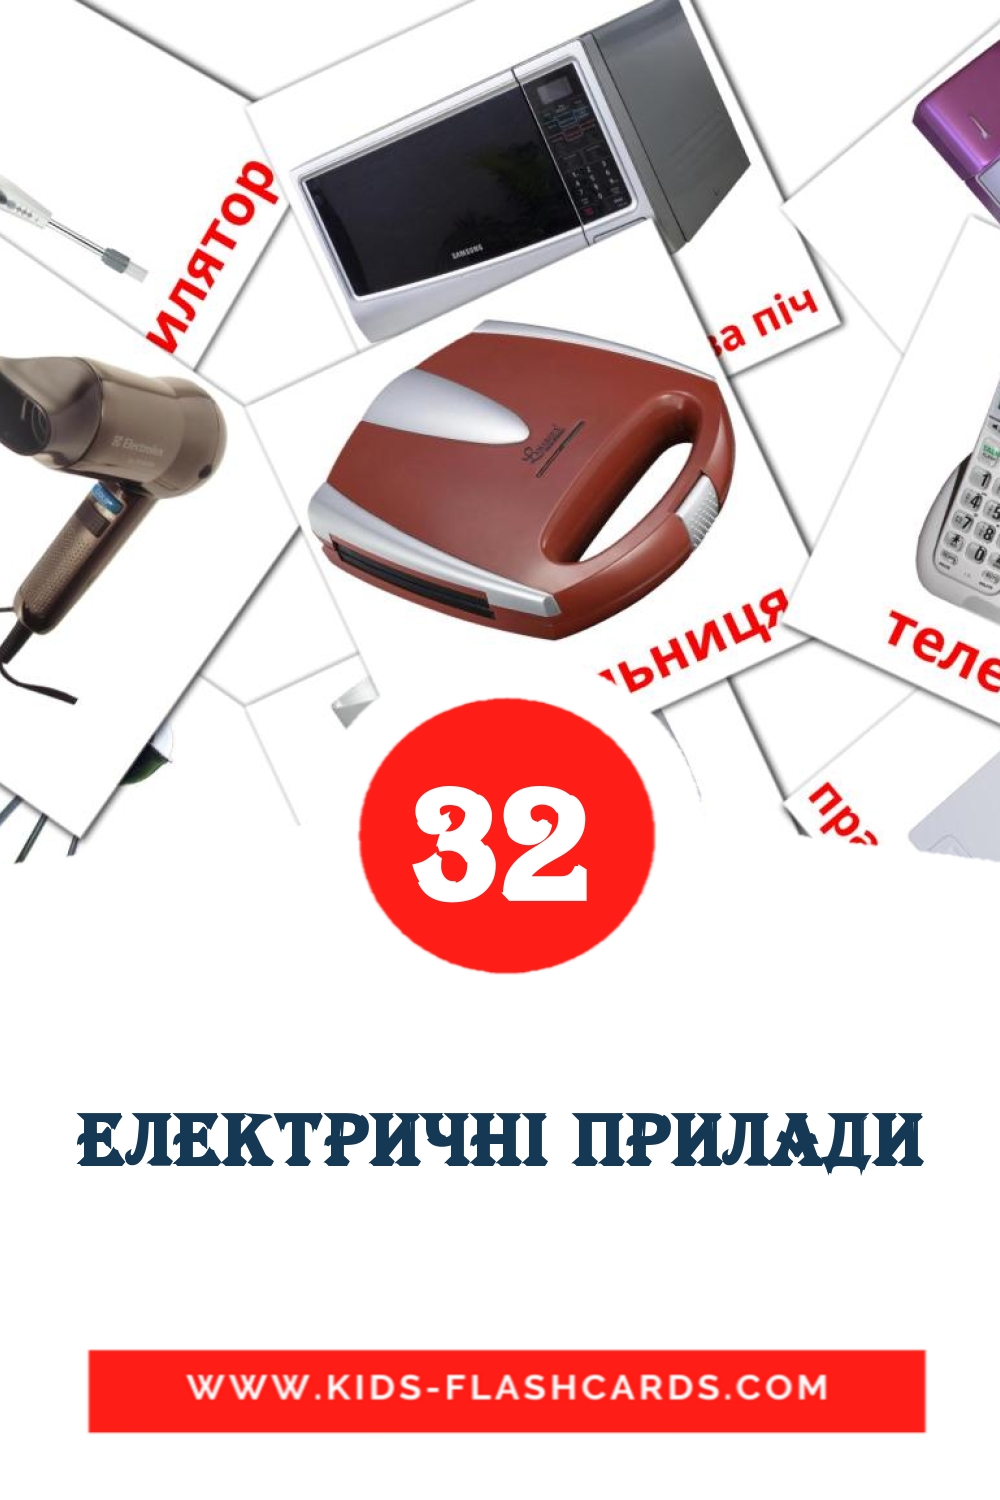 32 Електричні прилади Bildkarten für den Kindergarten auf Ukrainisch